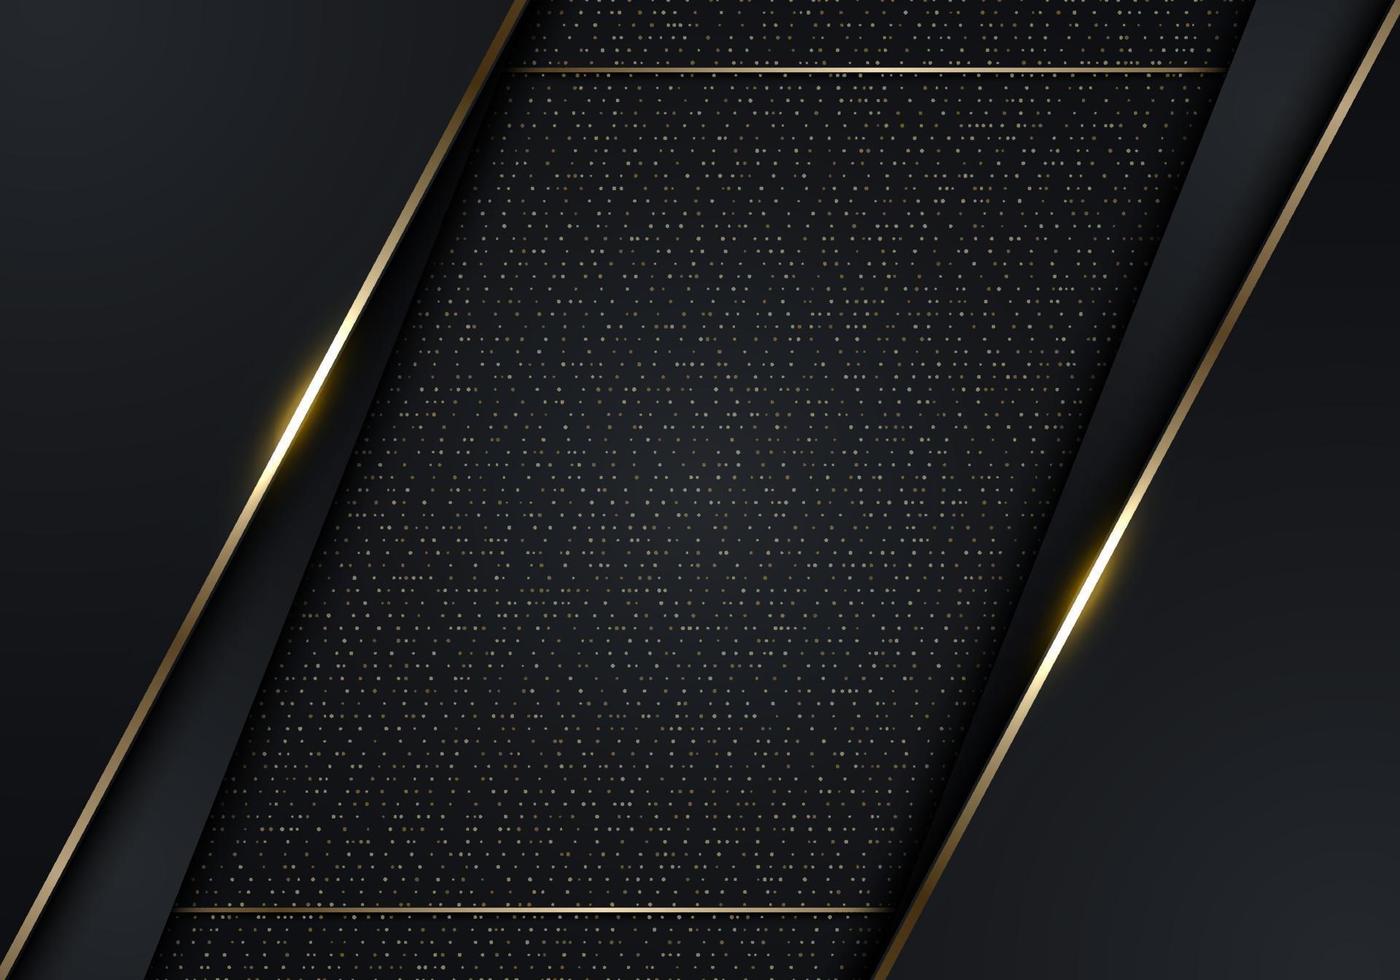 3D-modernes Luxus-Banner-Template-Design mit schwarzen Streifen und goldenem Glitzer-Gold-Linienlicht, das auf dunklem Hintergrund funkelt. vektor